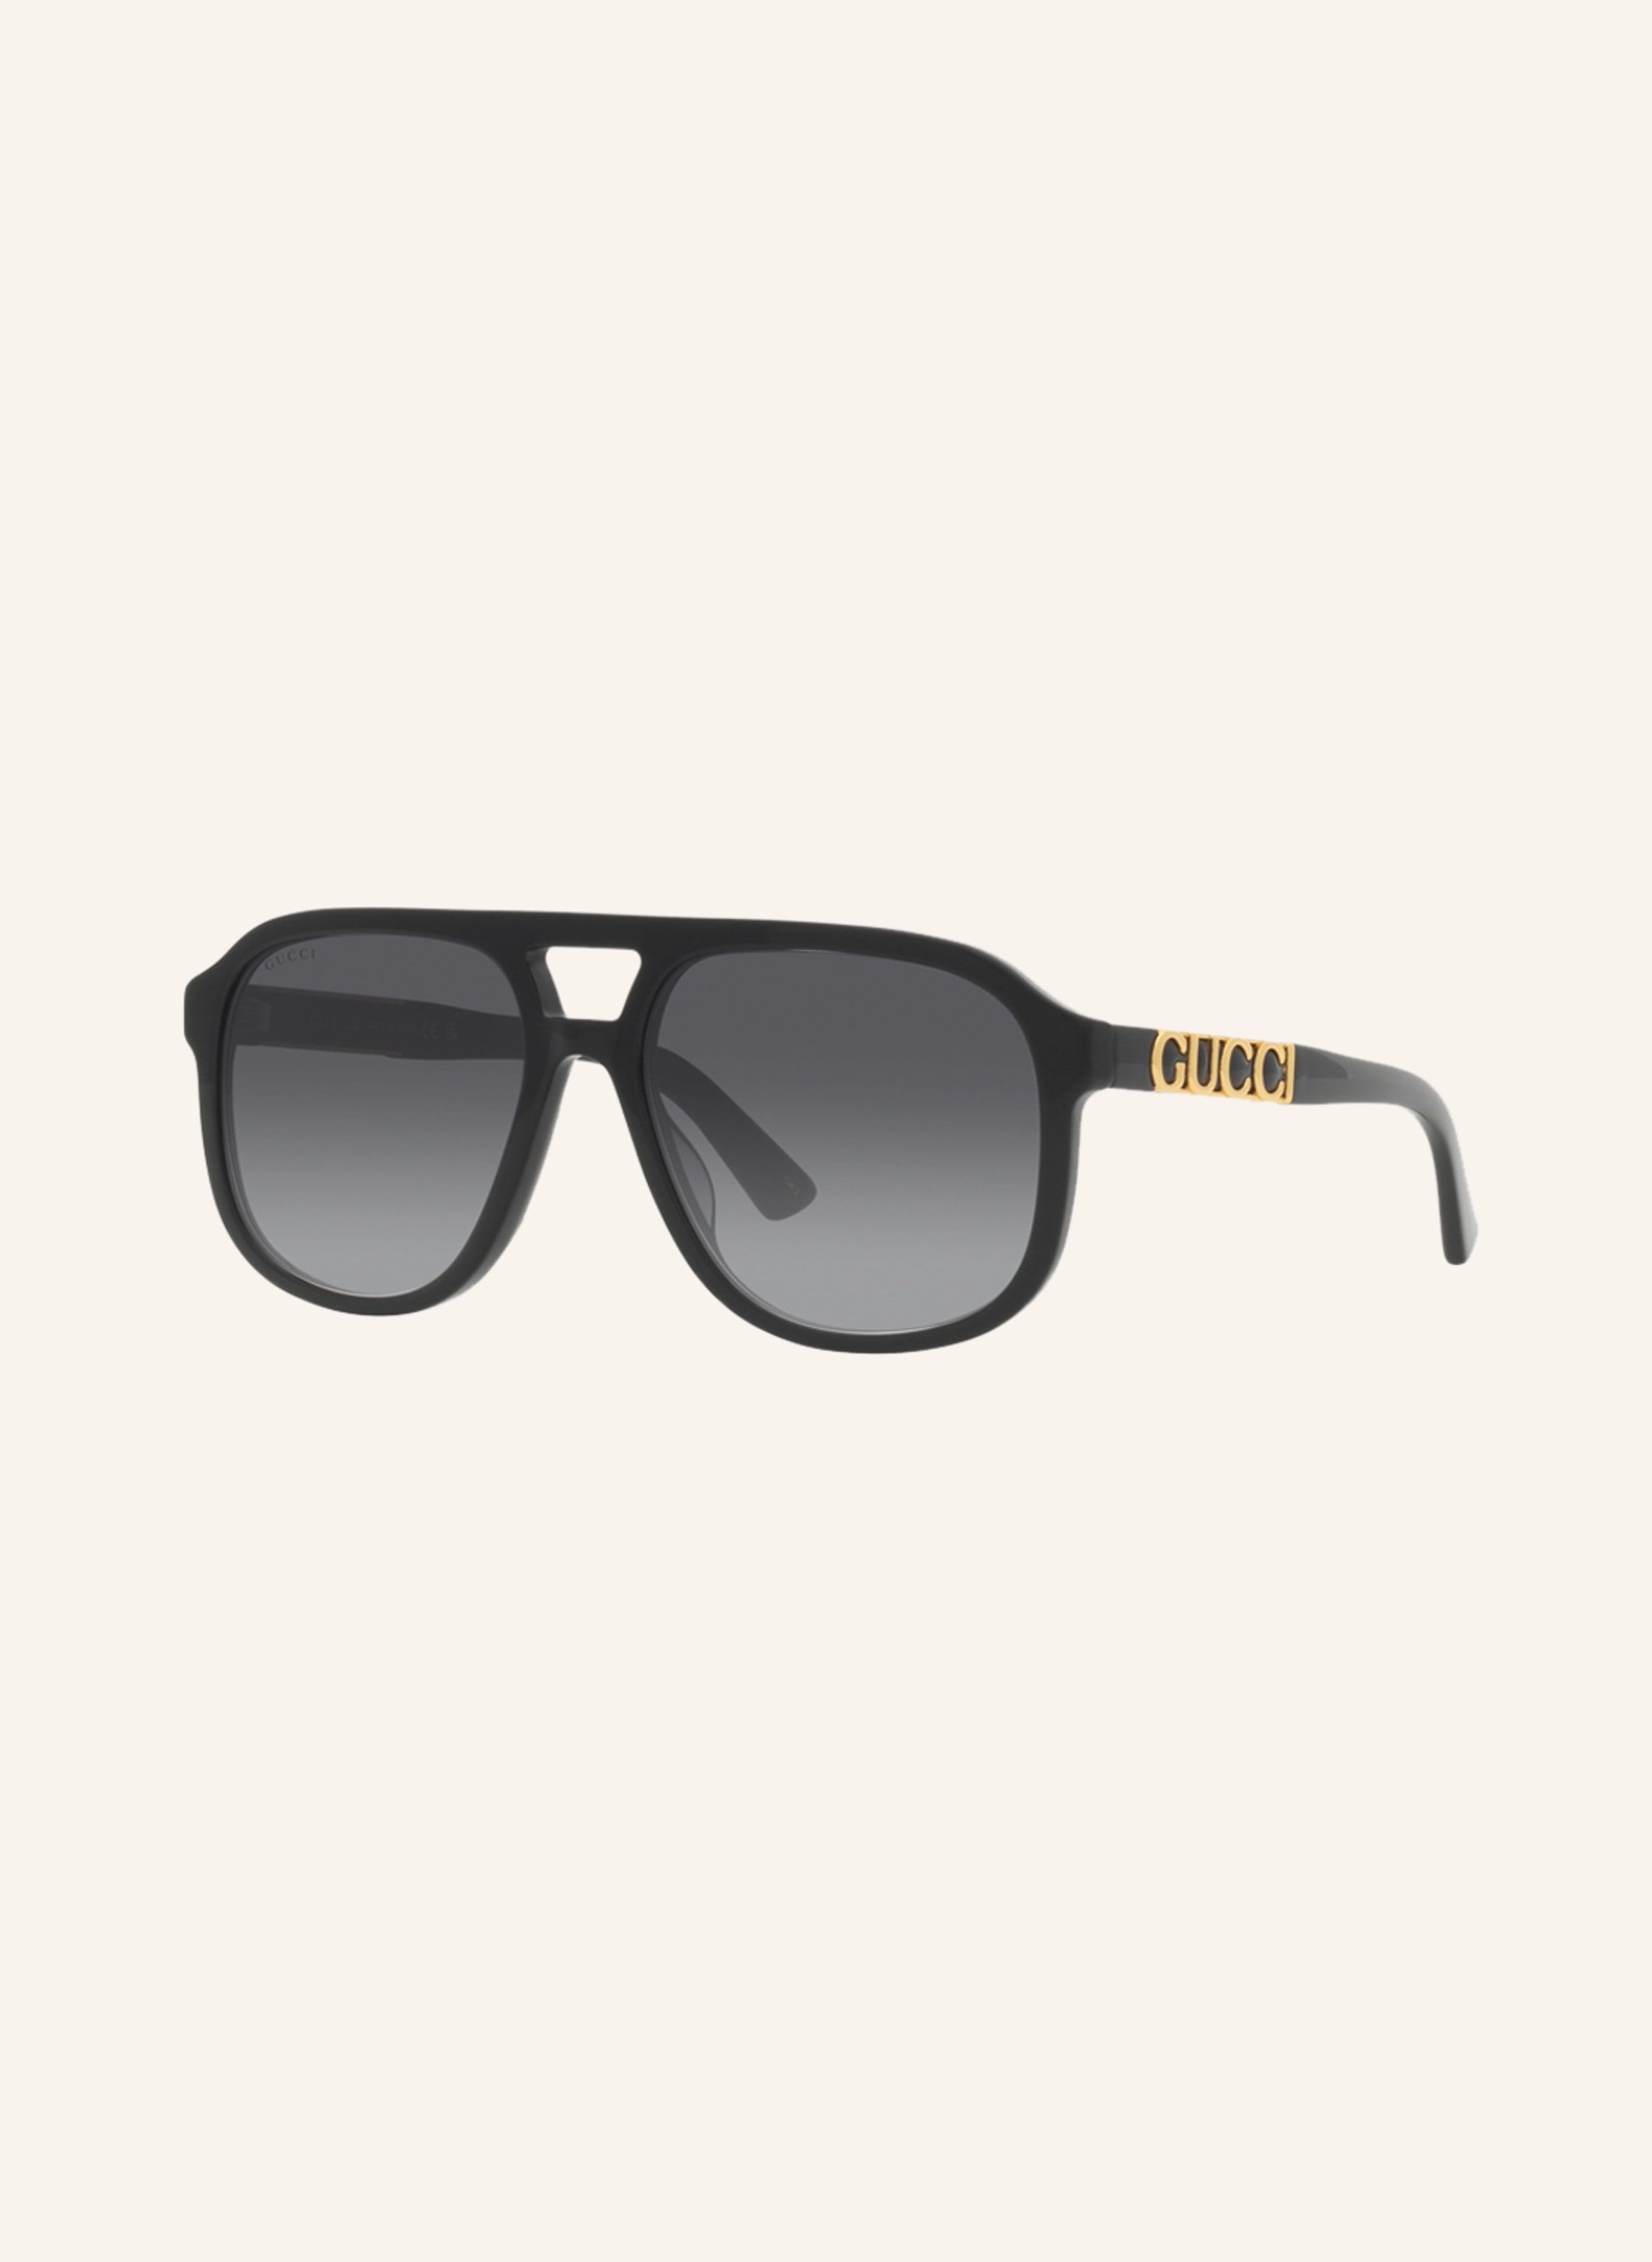 GUCCI Sunglasses in 1220l1 - black/ gray gradient